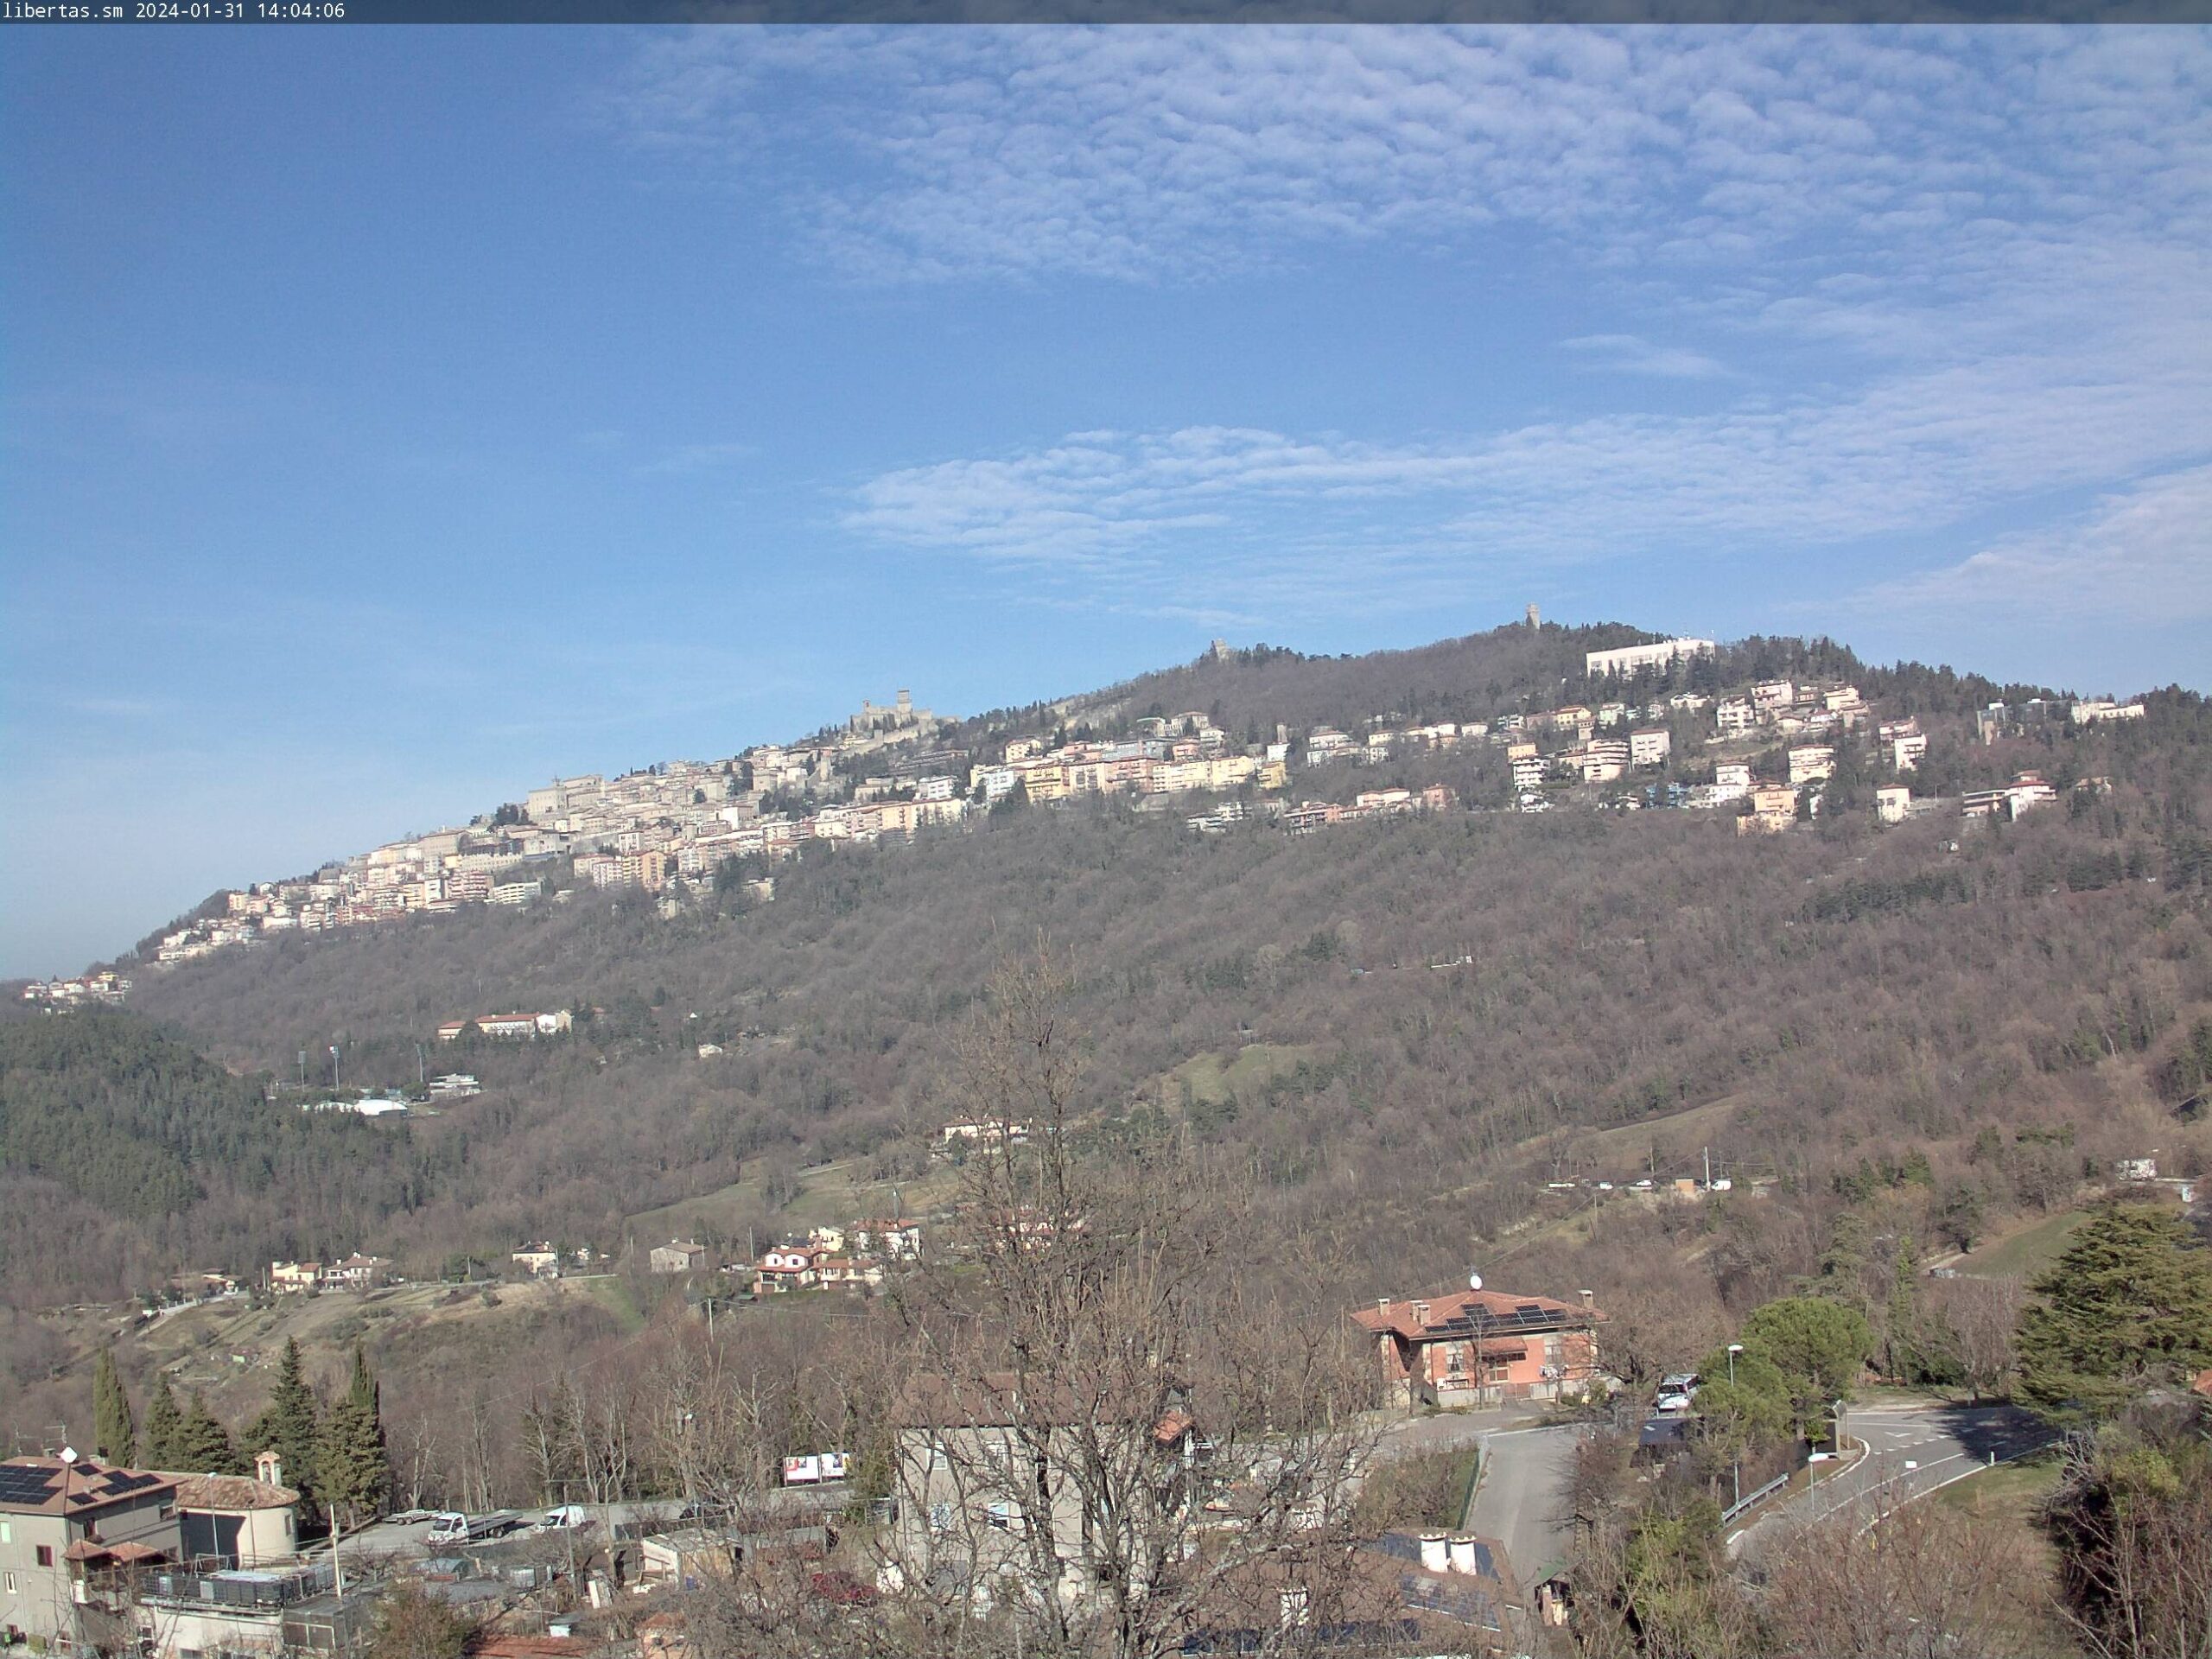 San Marino. Meteo: anticiclone subtropicale almeno fino a metà mese, sole, nebbia e temperatura sopra la media